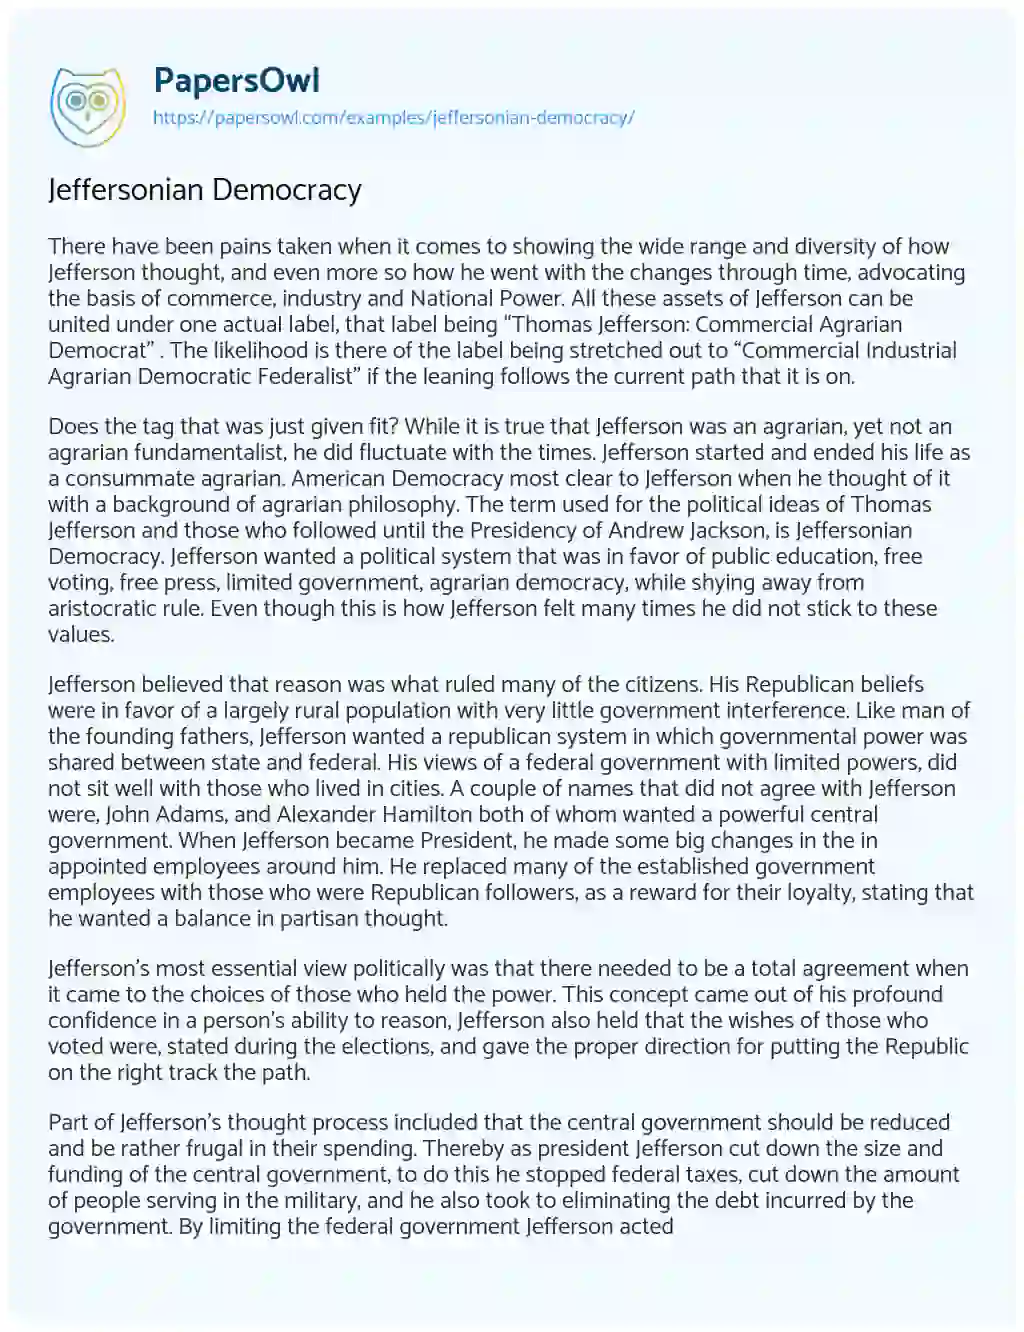 Jeffersonian Democracy essay